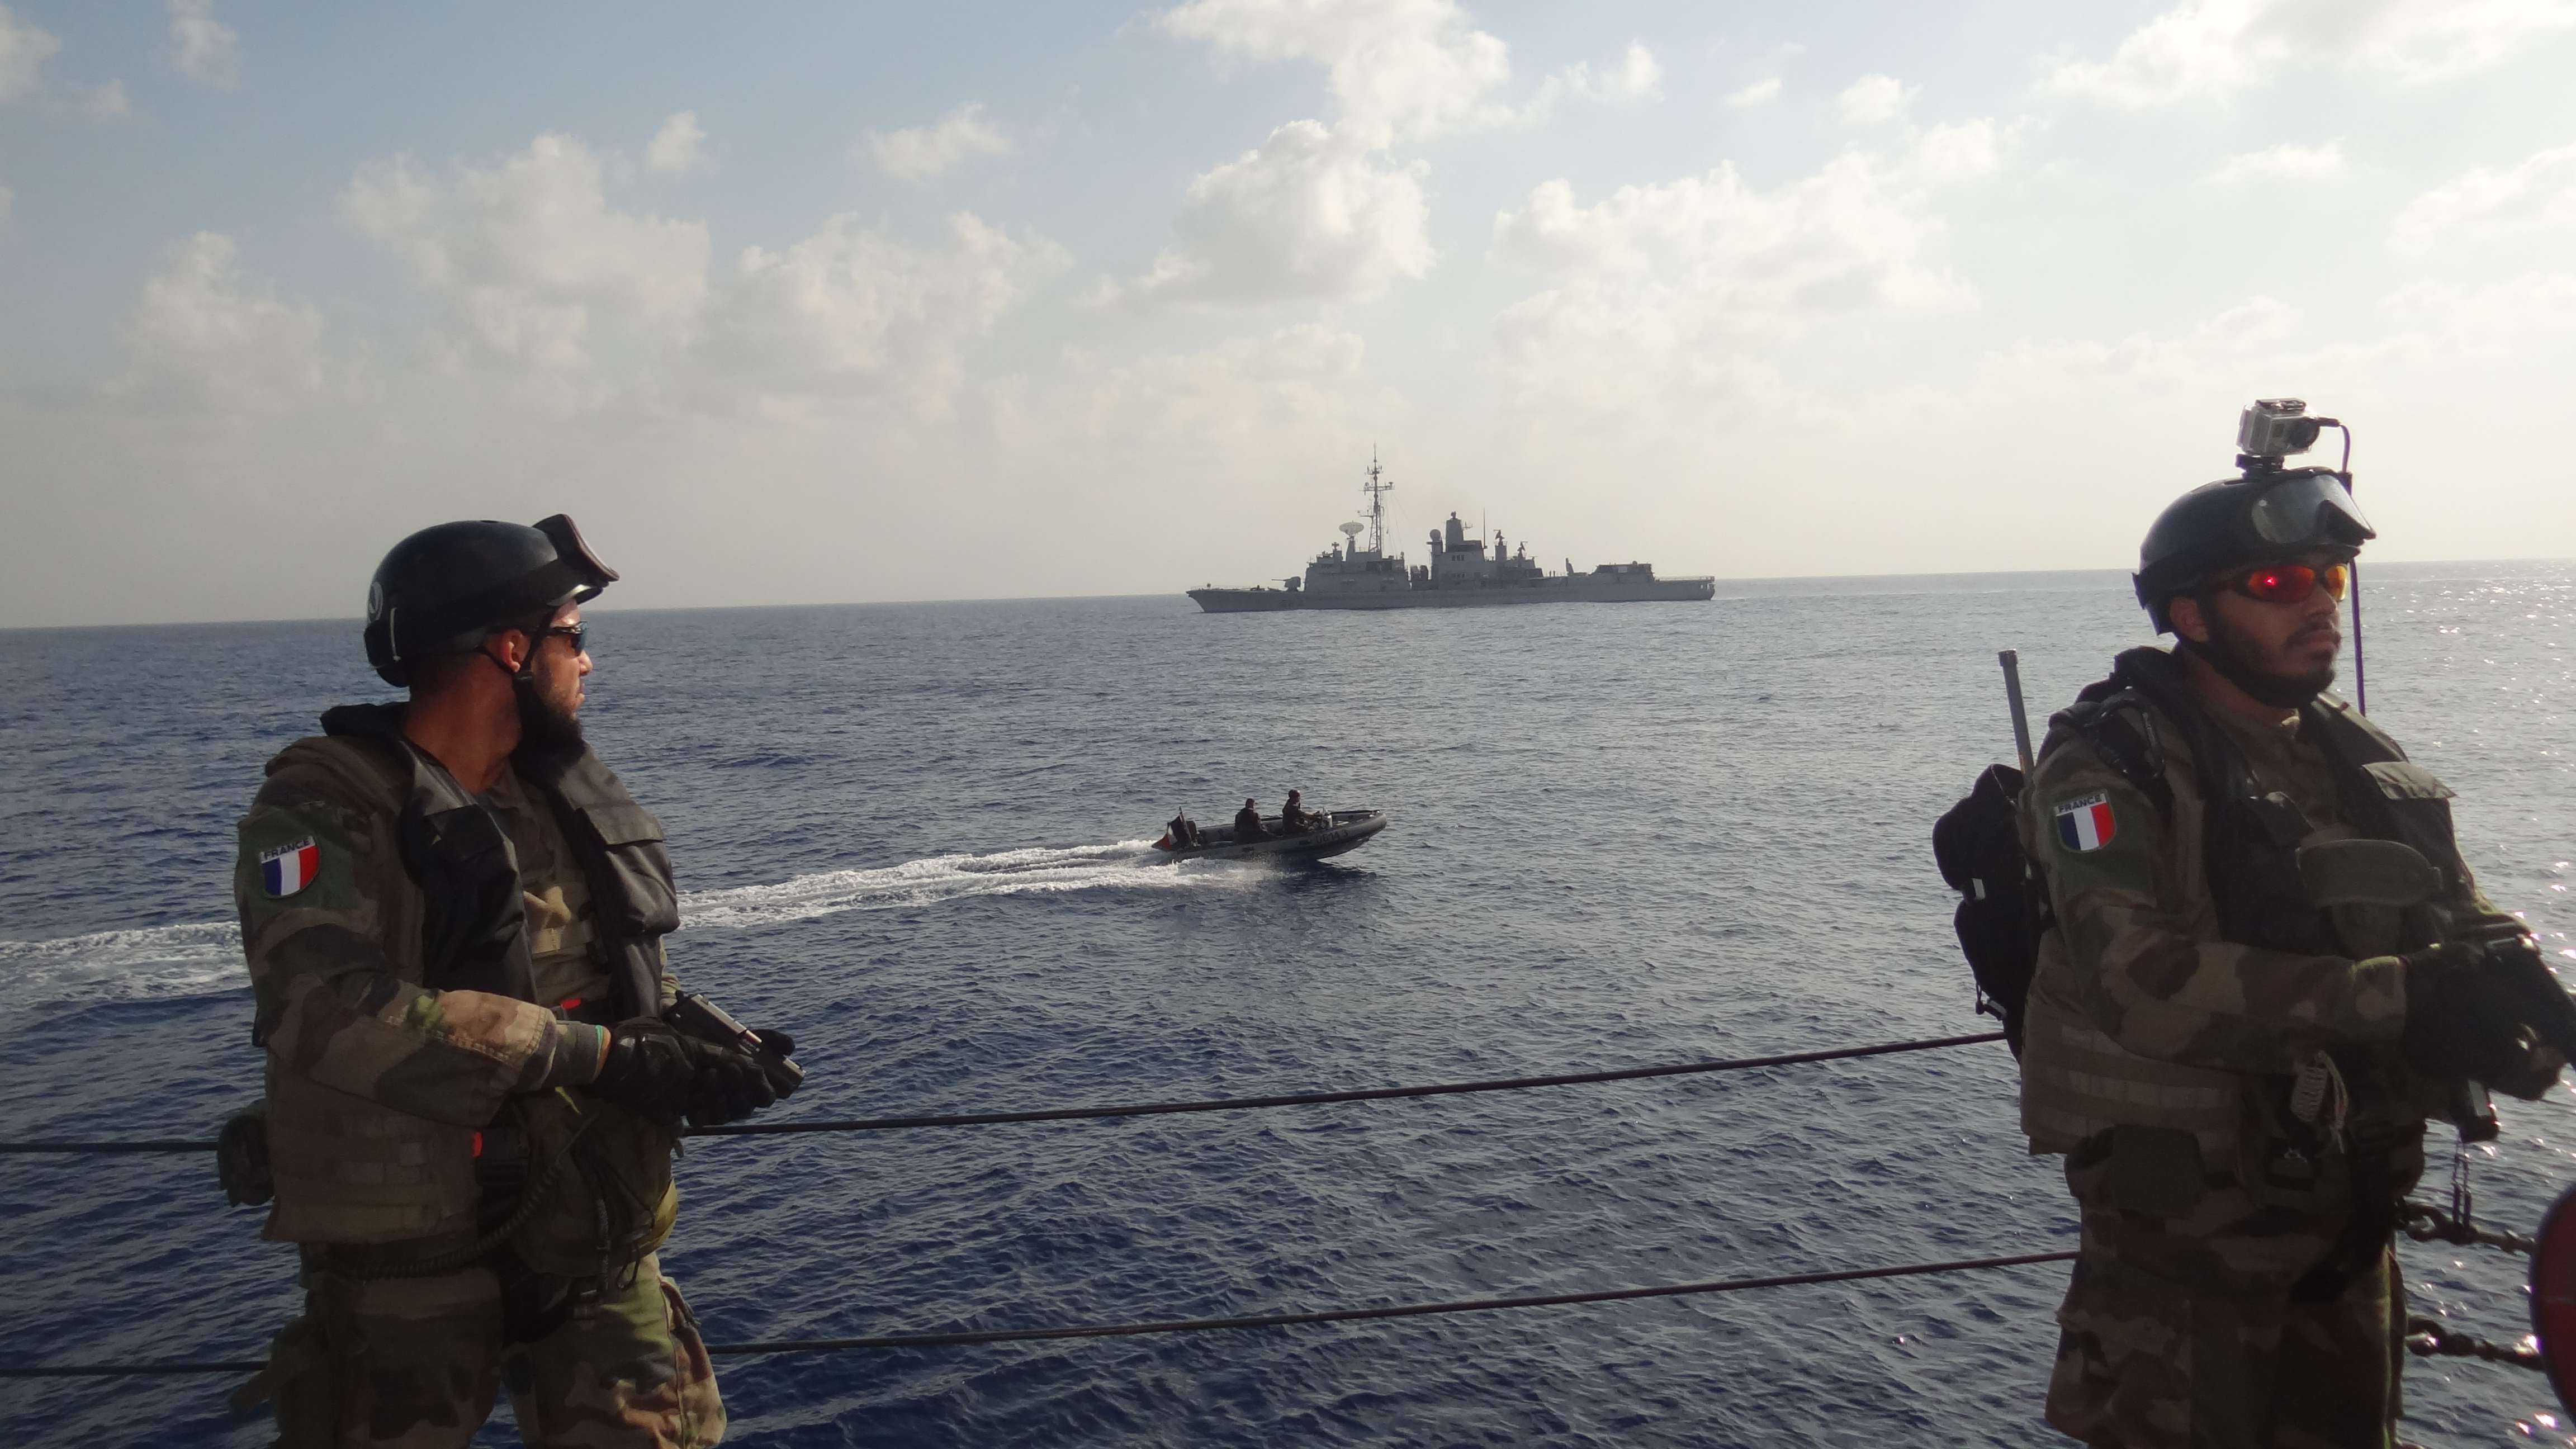 القوات البحرية المصرية والفرنسية تنفذان تدريب عابر بنطاق البحر المتوسط (1)